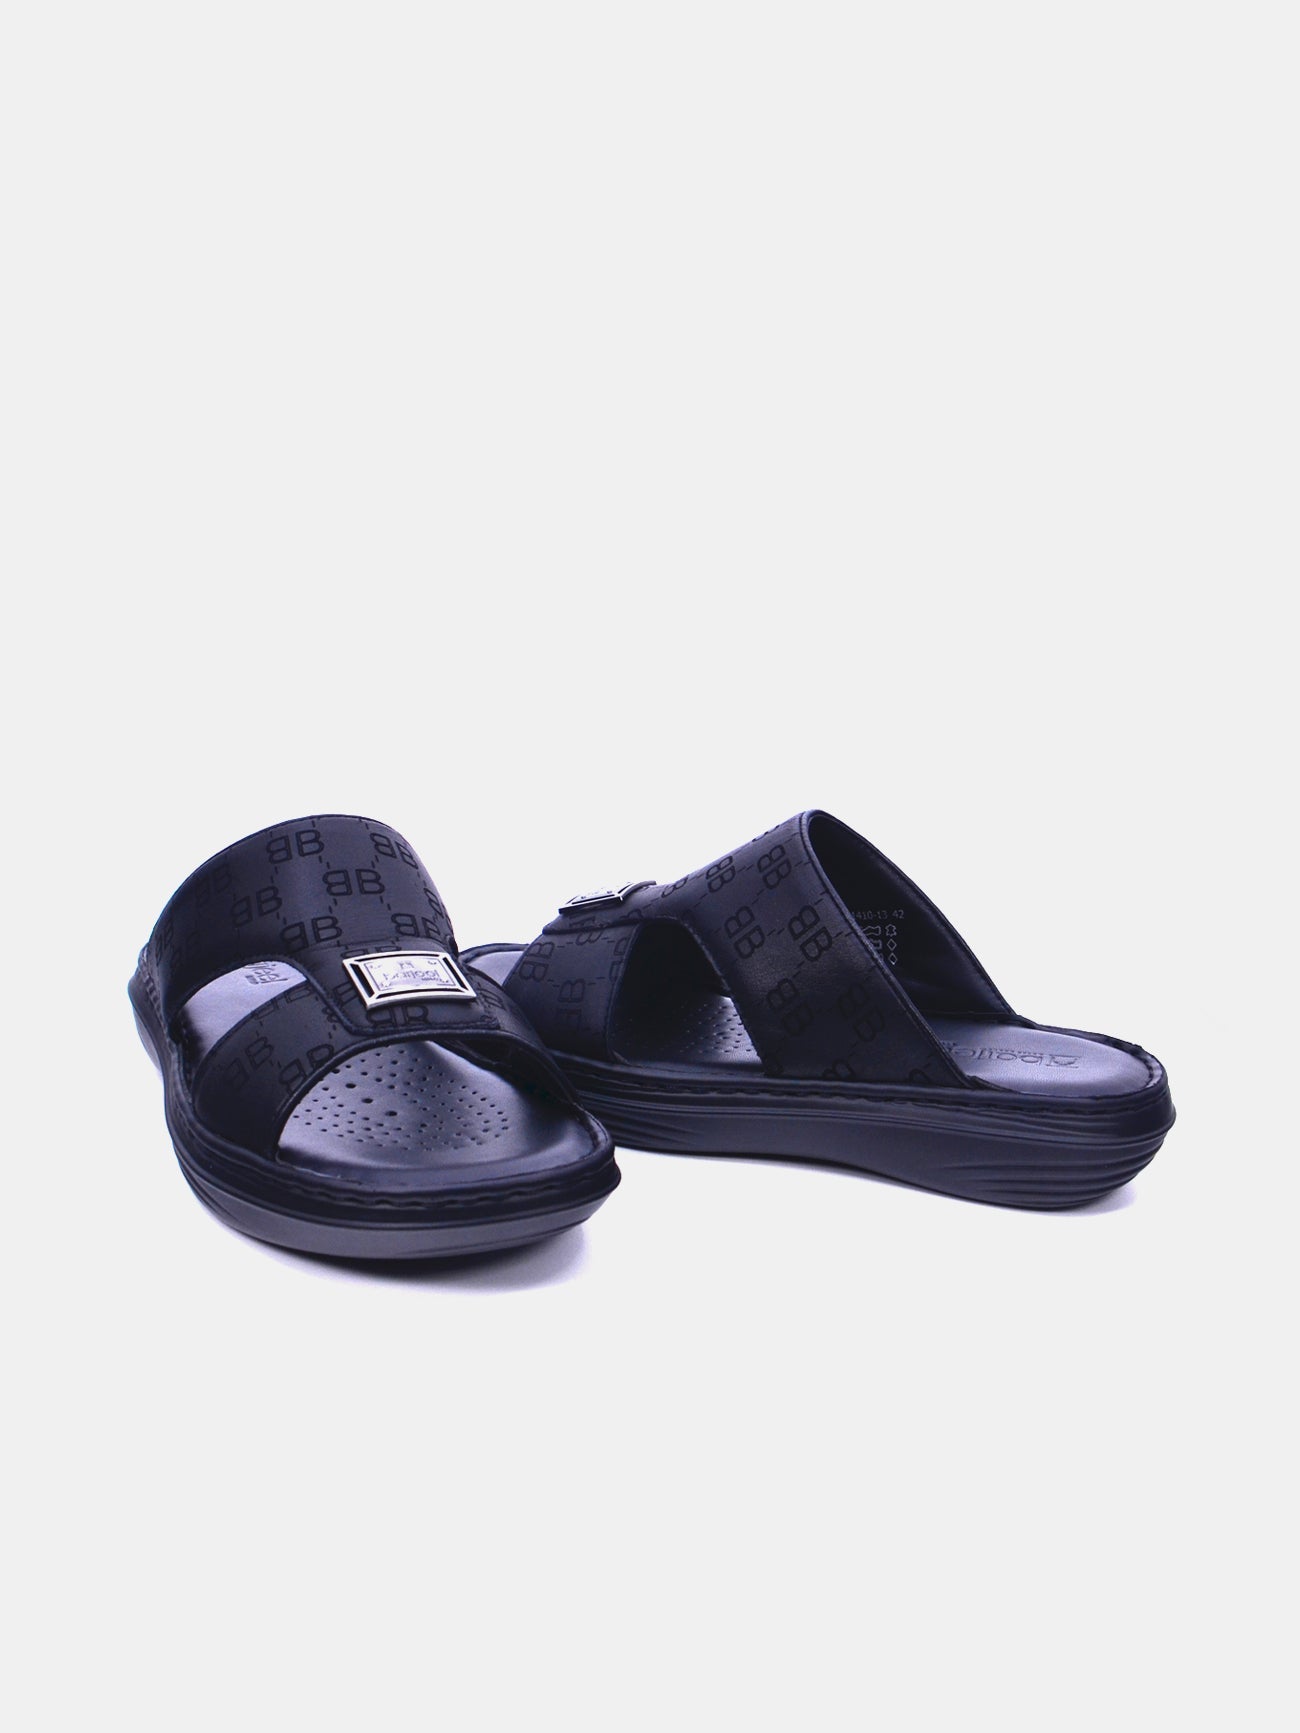 Barjeel Uno 21410-13 Men's Arabic Sandals #color_Black